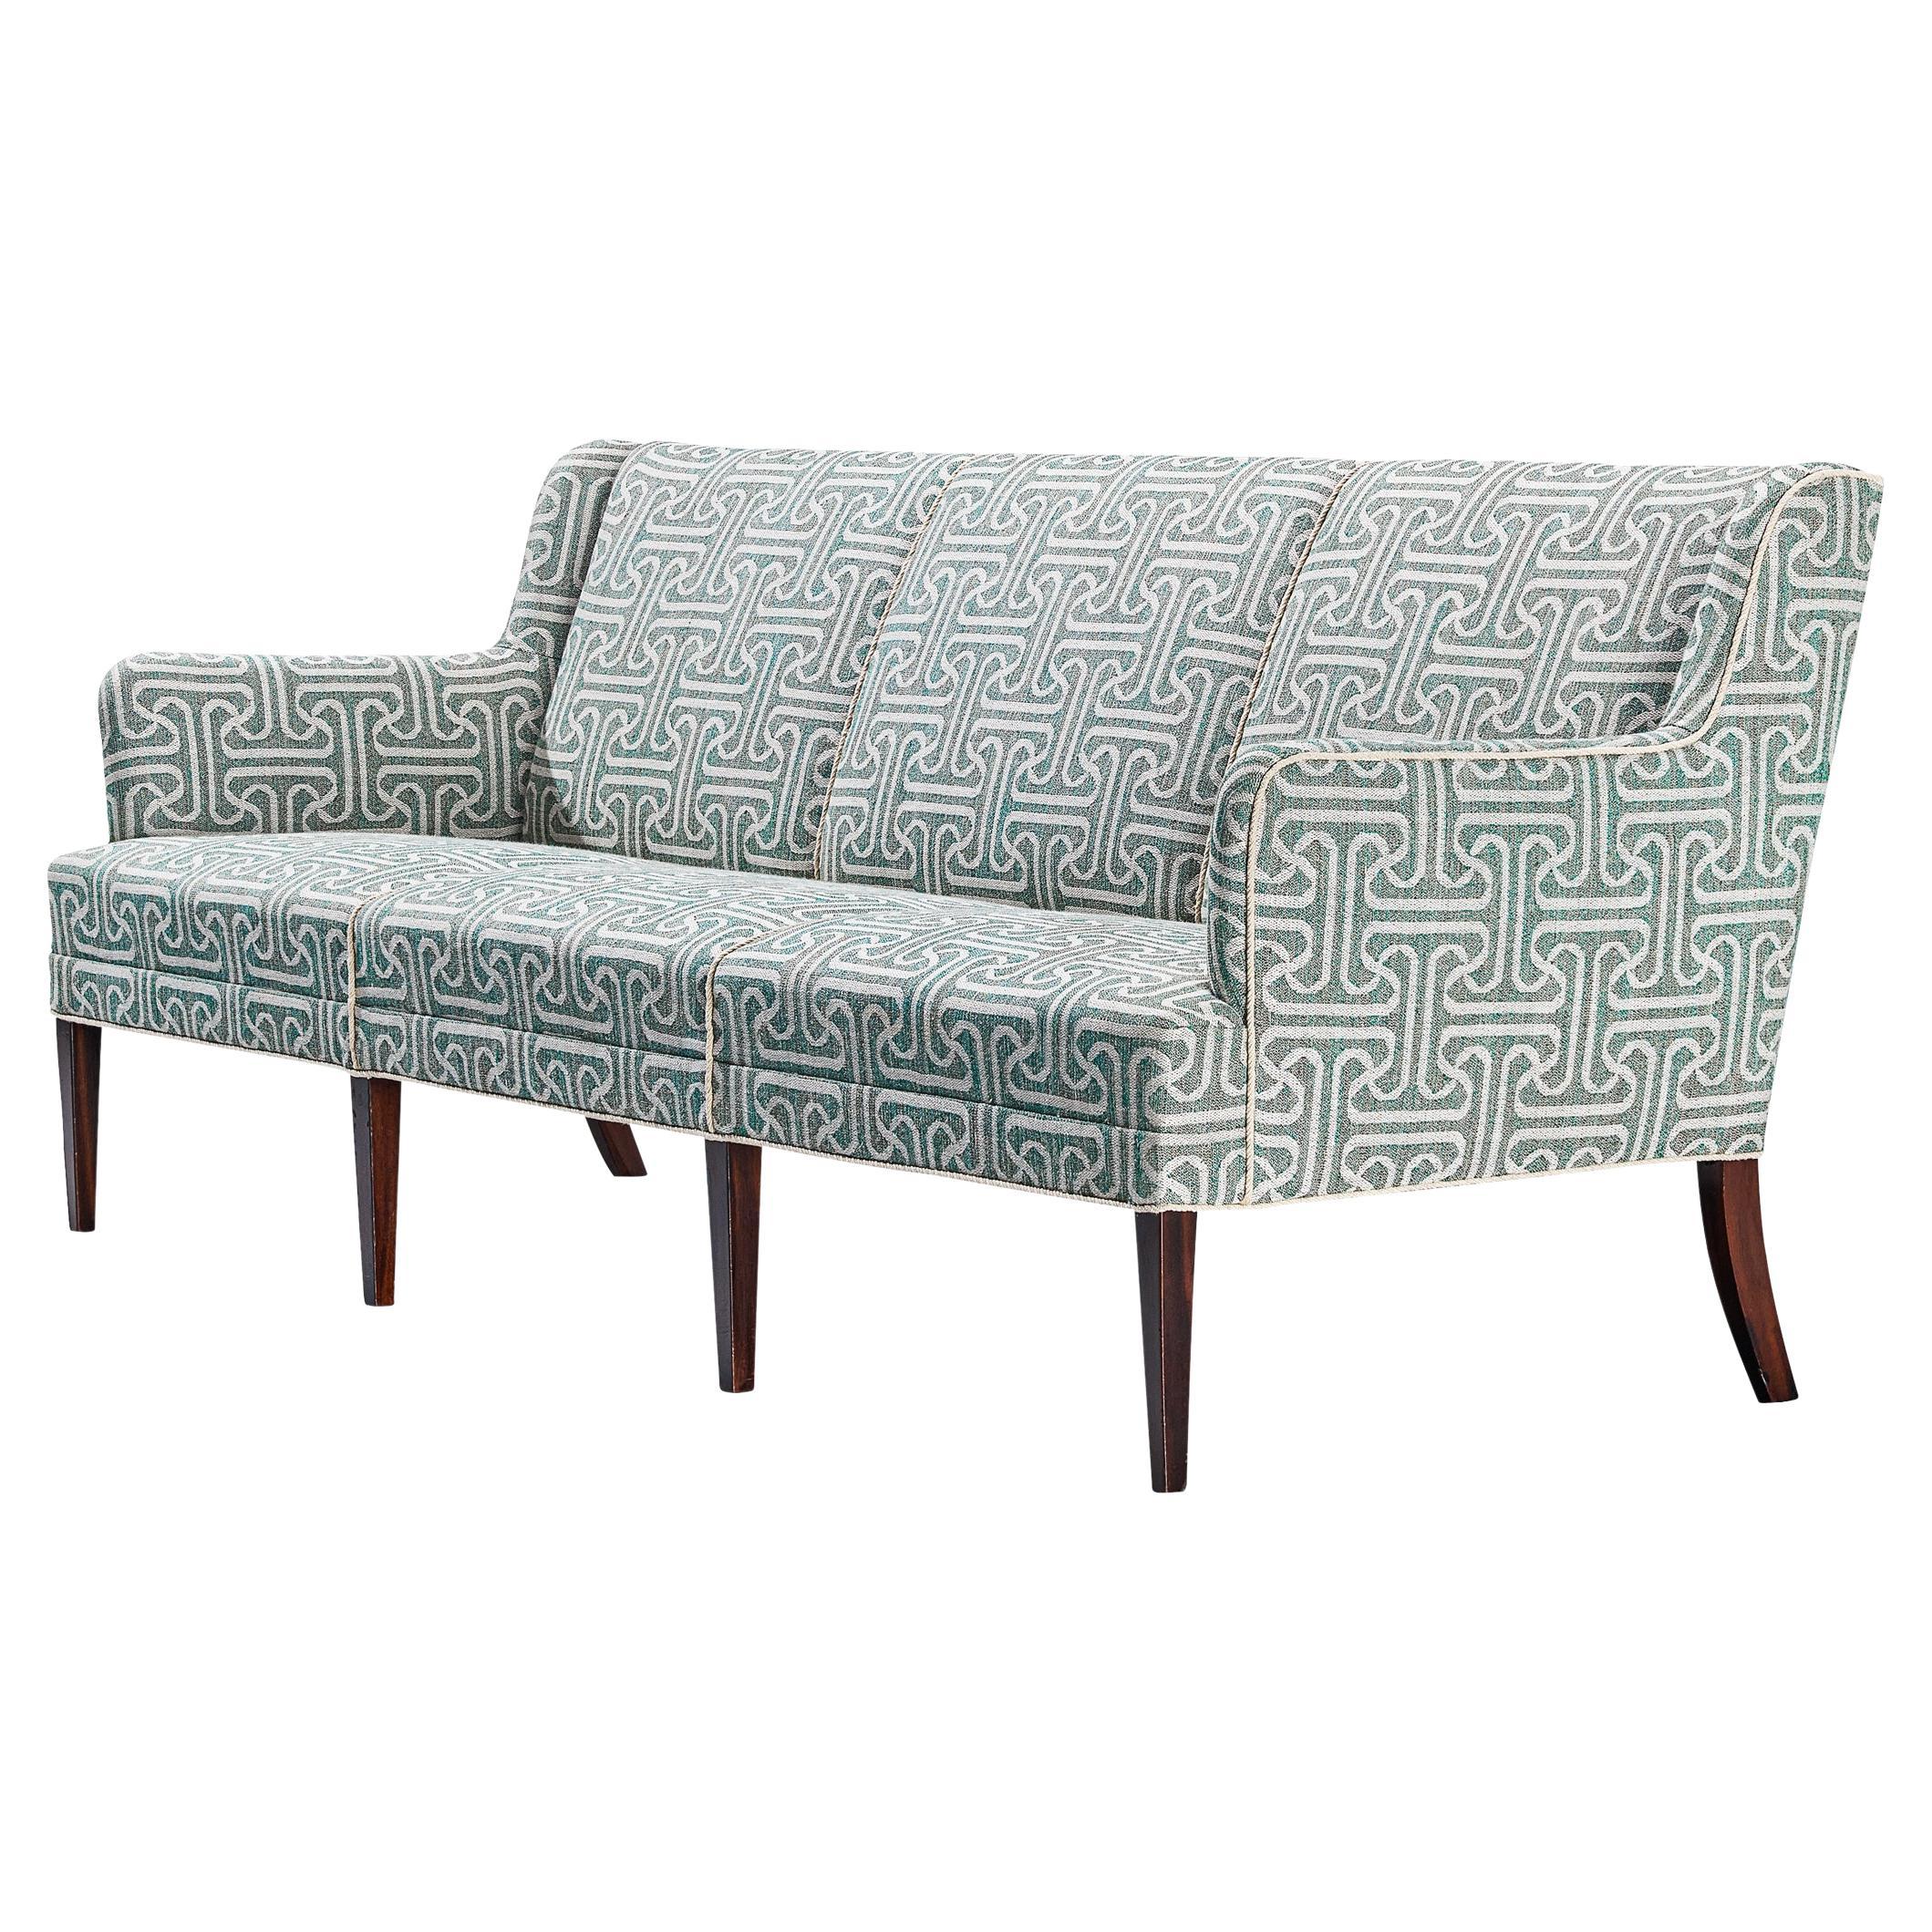 Danish Elegant Sofa in Light Blue Patterned Upholstery